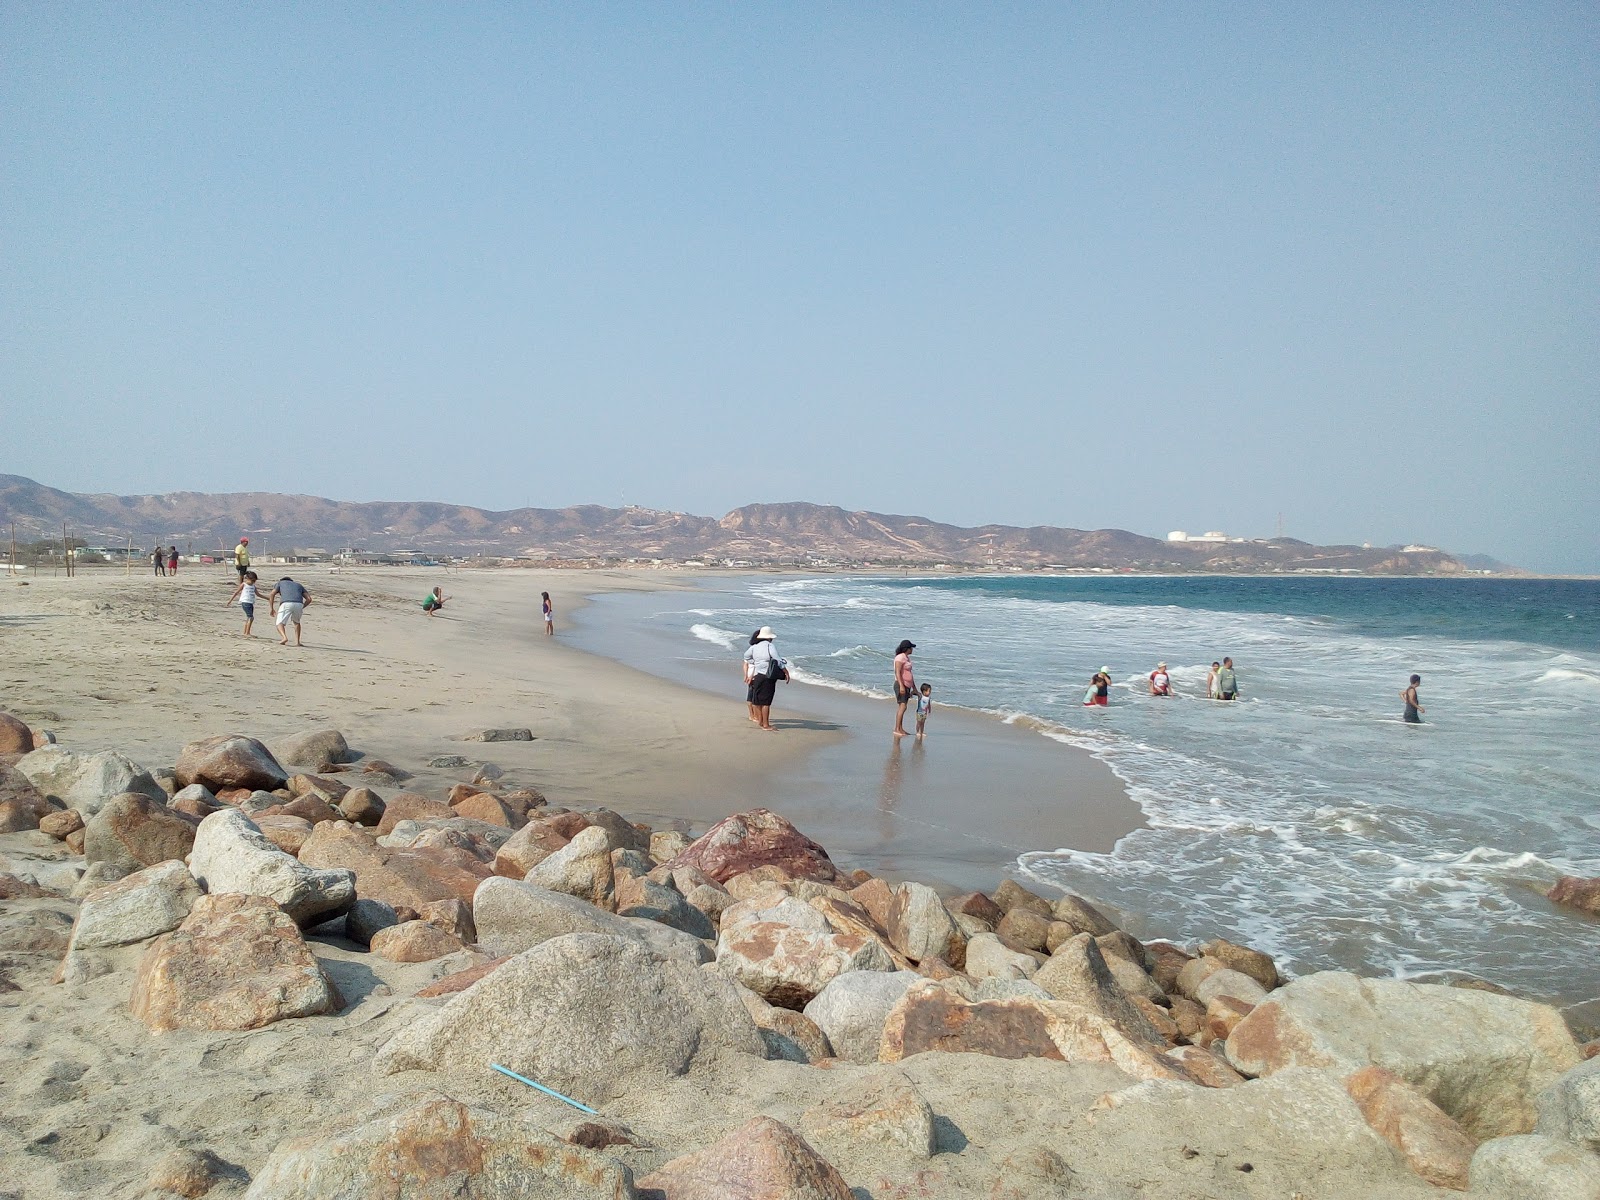 Las Escolleras beach'in fotoğrafı gri kum yüzey ile